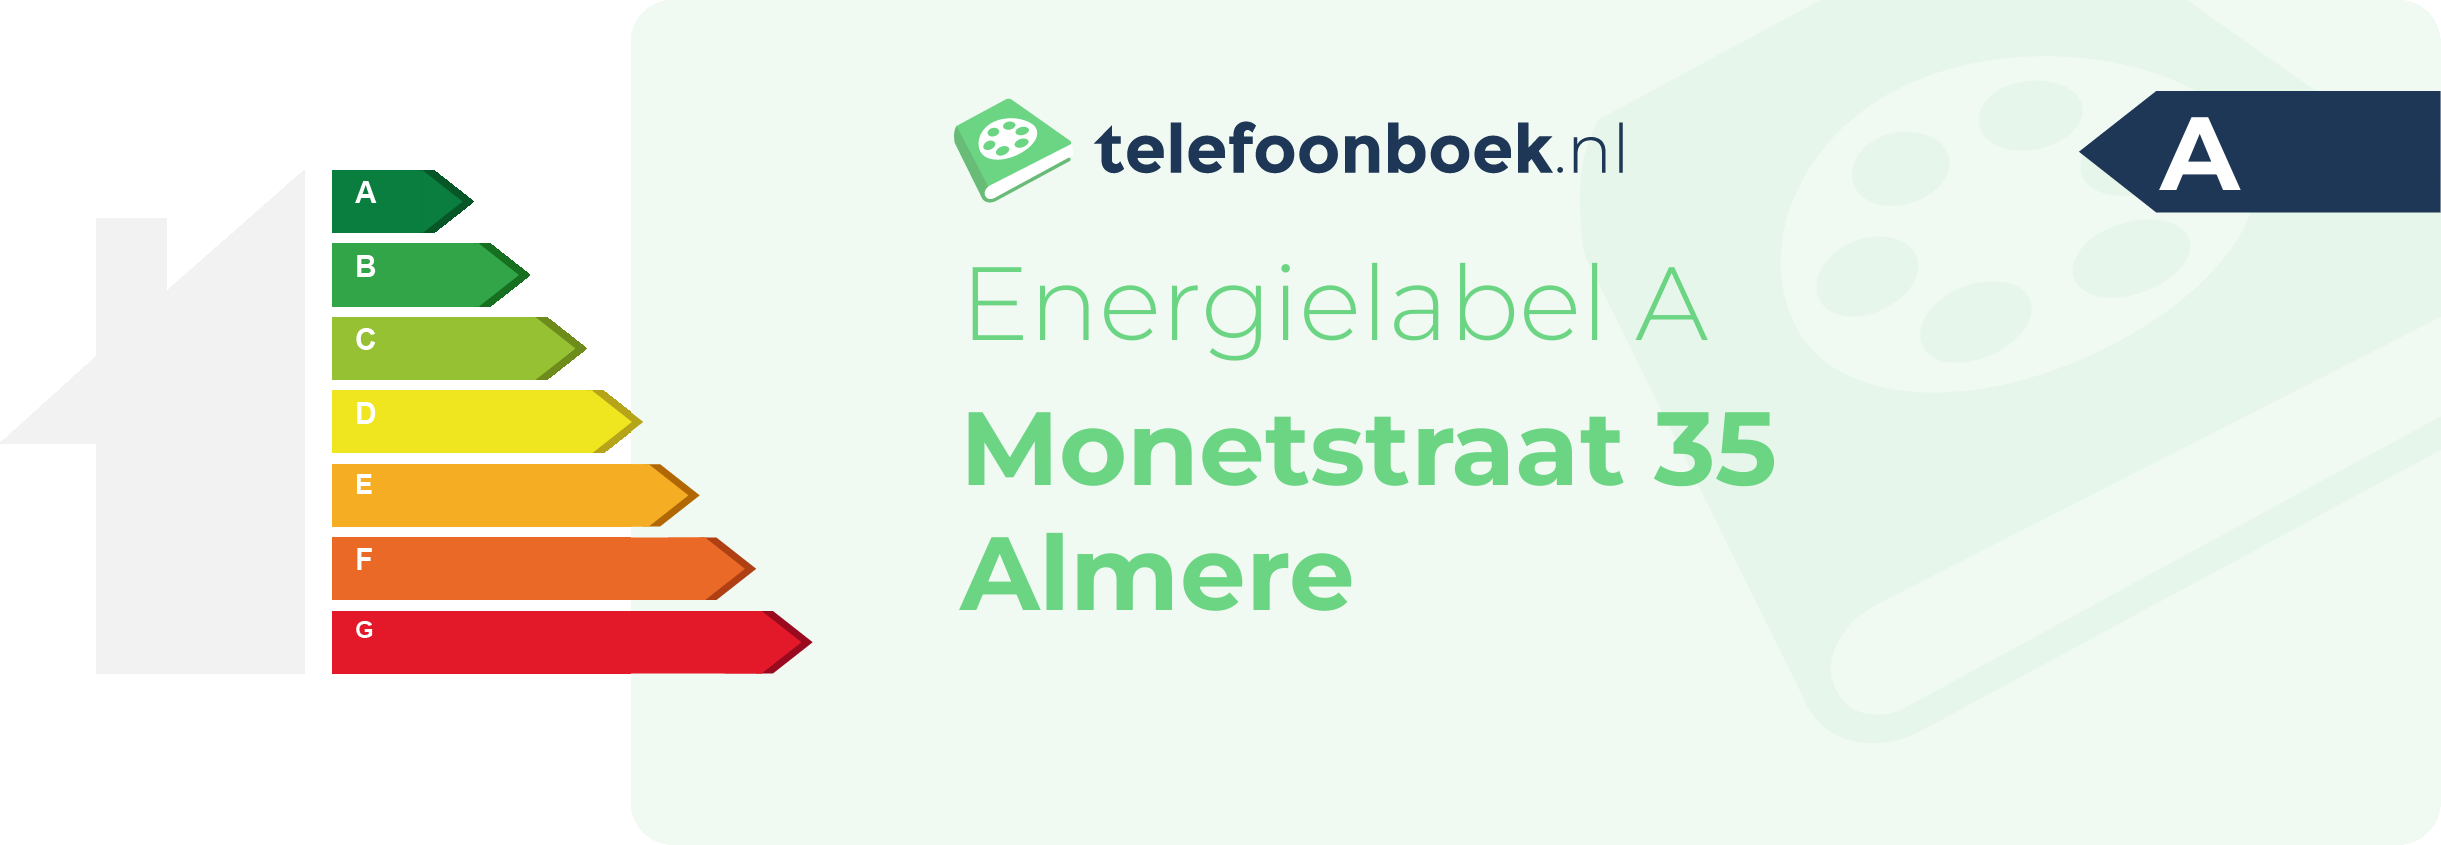 Energielabel Monetstraat 35 Almere